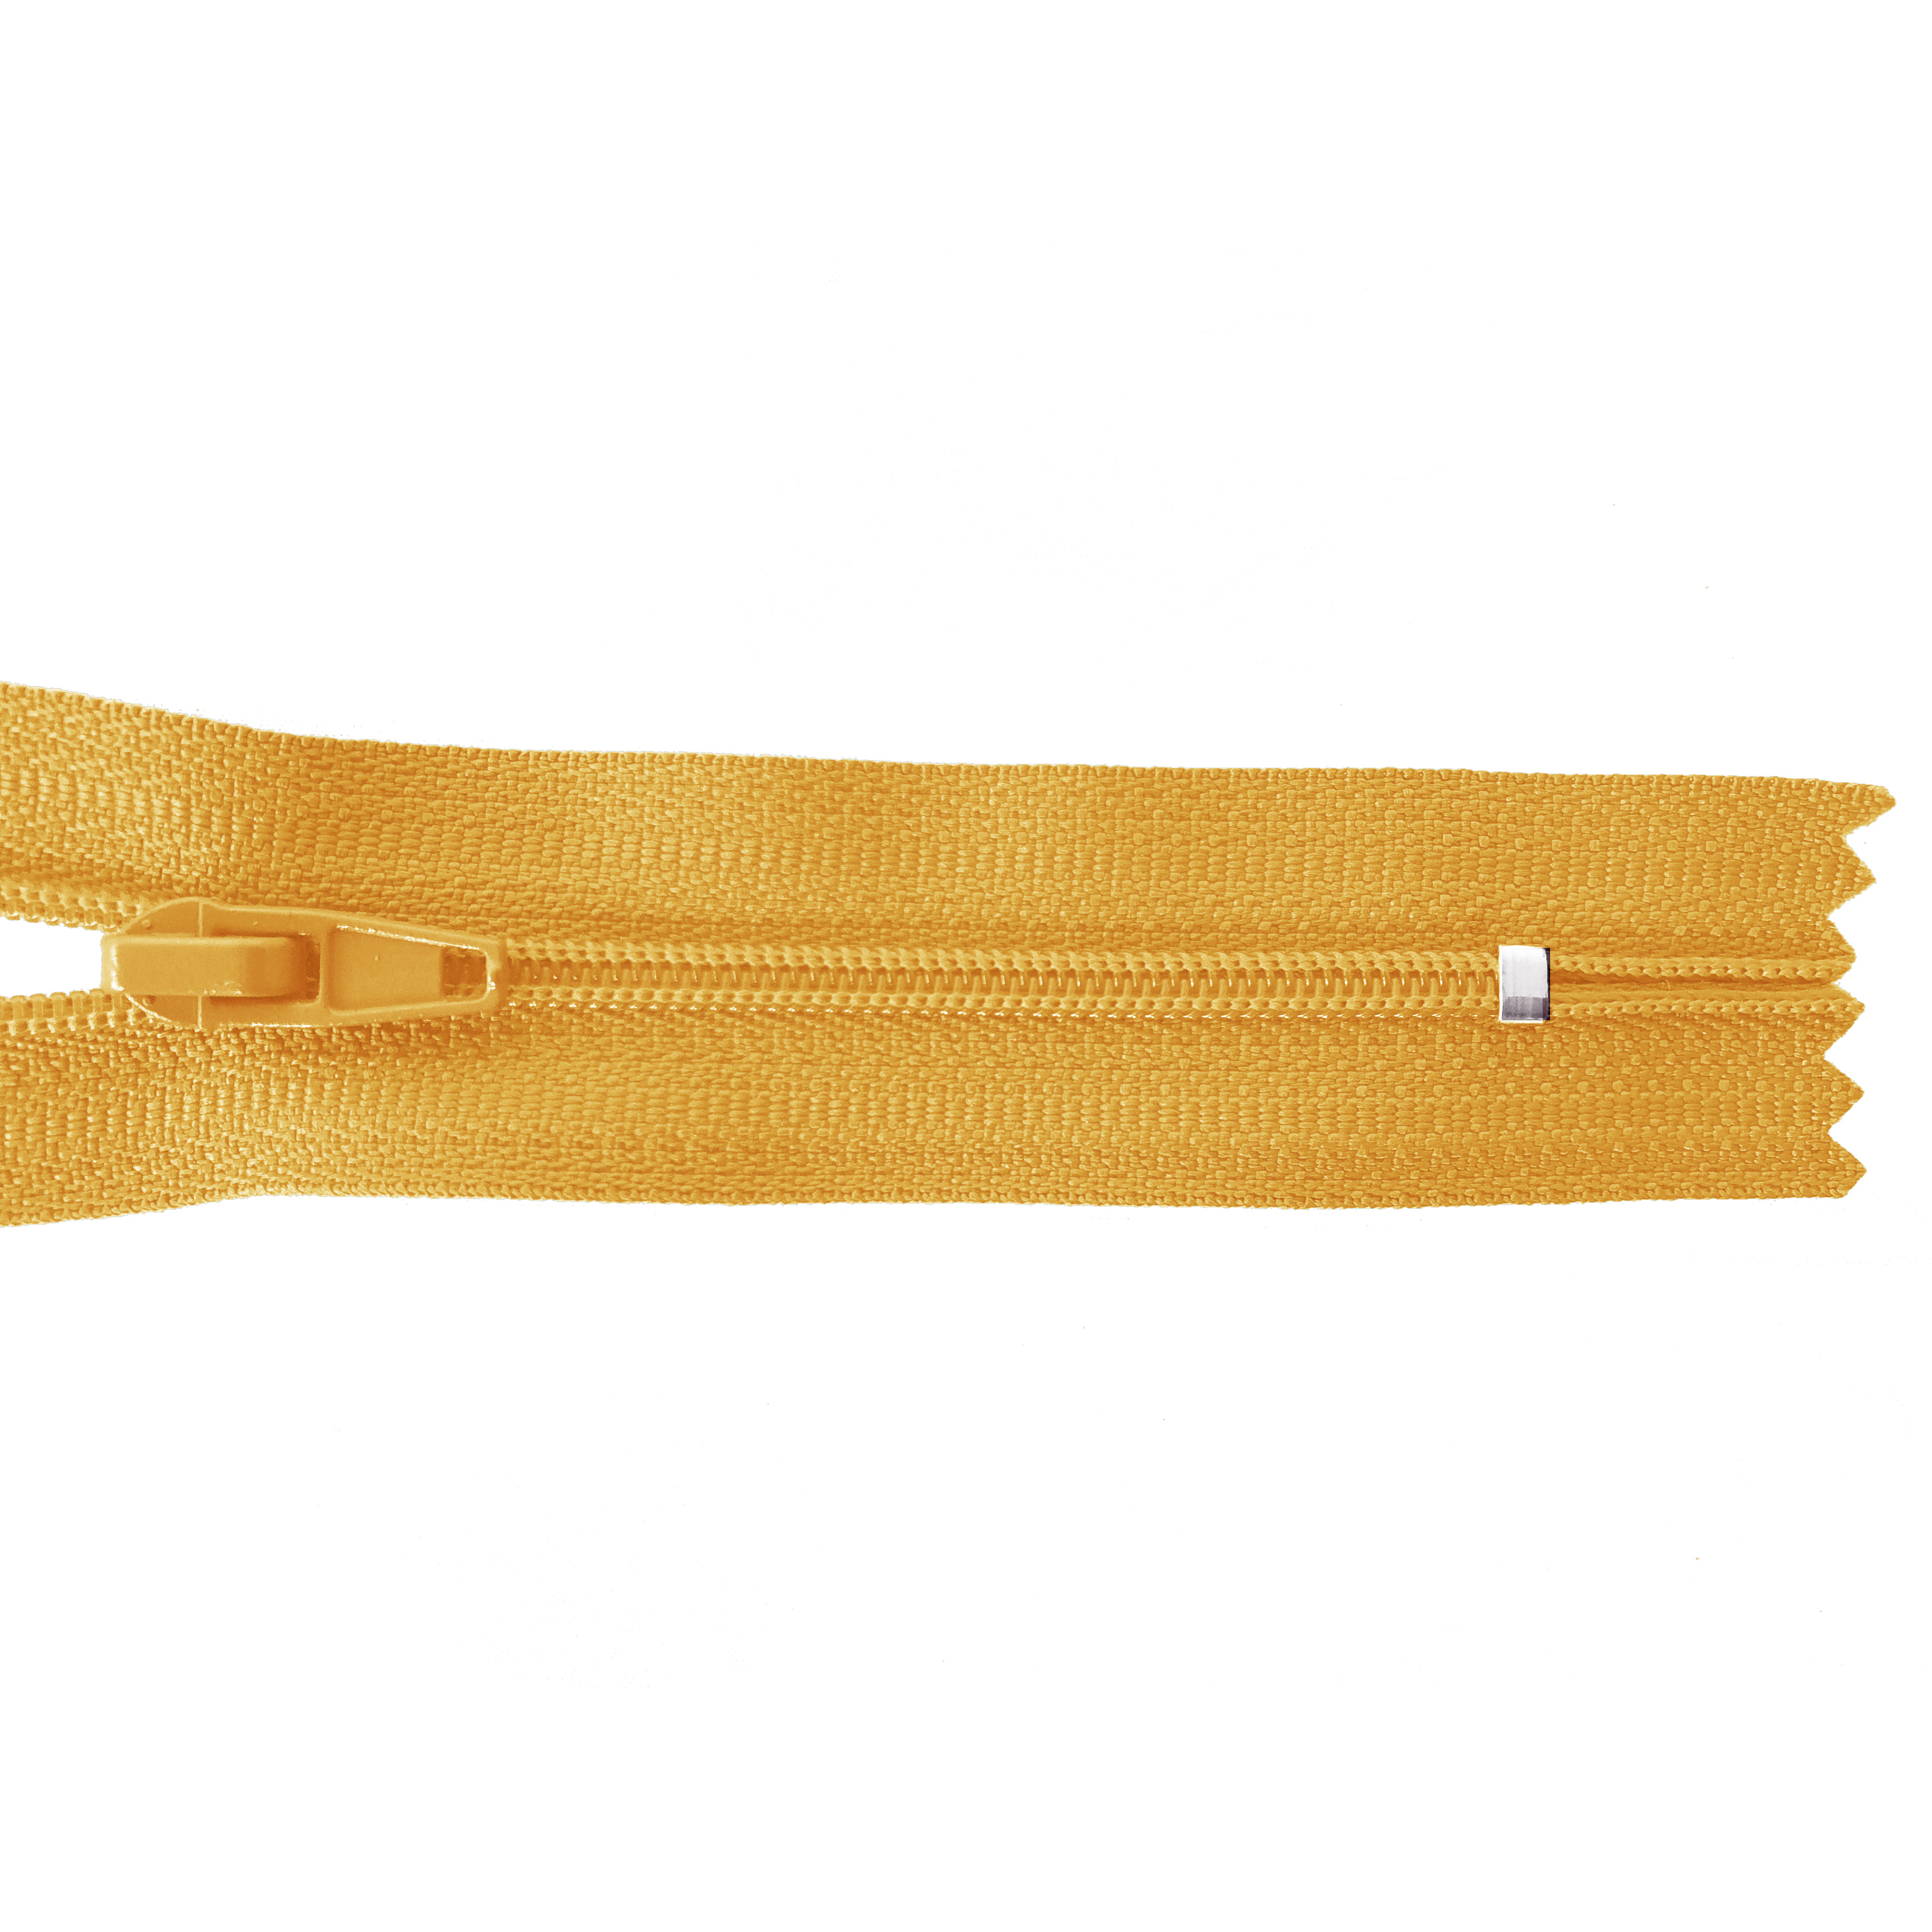 Reißverschluss nicht teilbar, PES-Spirale fein, hellorange-gelb, hochwertiger Marken-Reißverschluss von Rubi/Barcelona